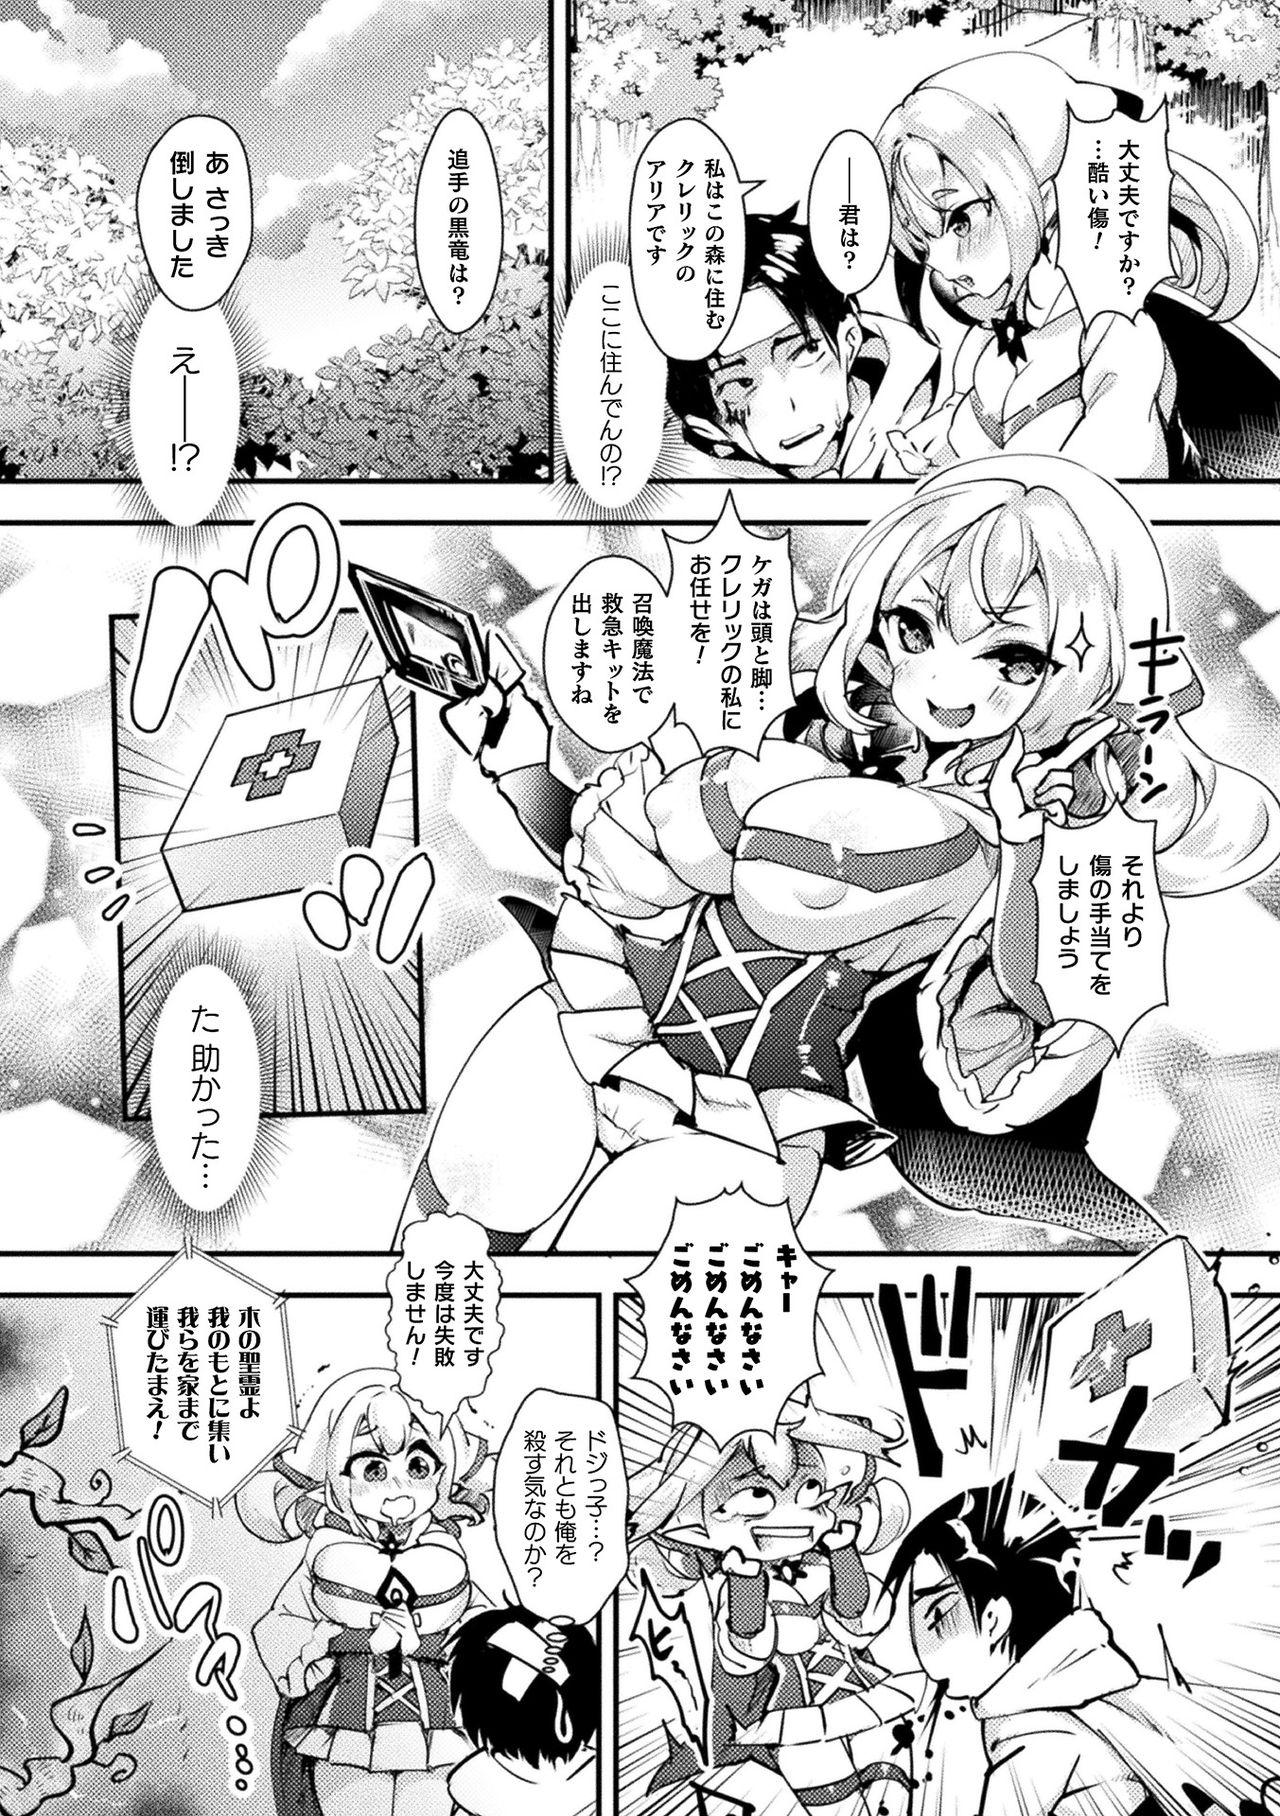 [Anthology] Bessatsu Comic Unreal Ponkotsu Fantasy Heroine H ~Doji o Funde Gyakuten Saretari Ero Trap ni Hamattari!?~ Vol. 1 [Digital] 62